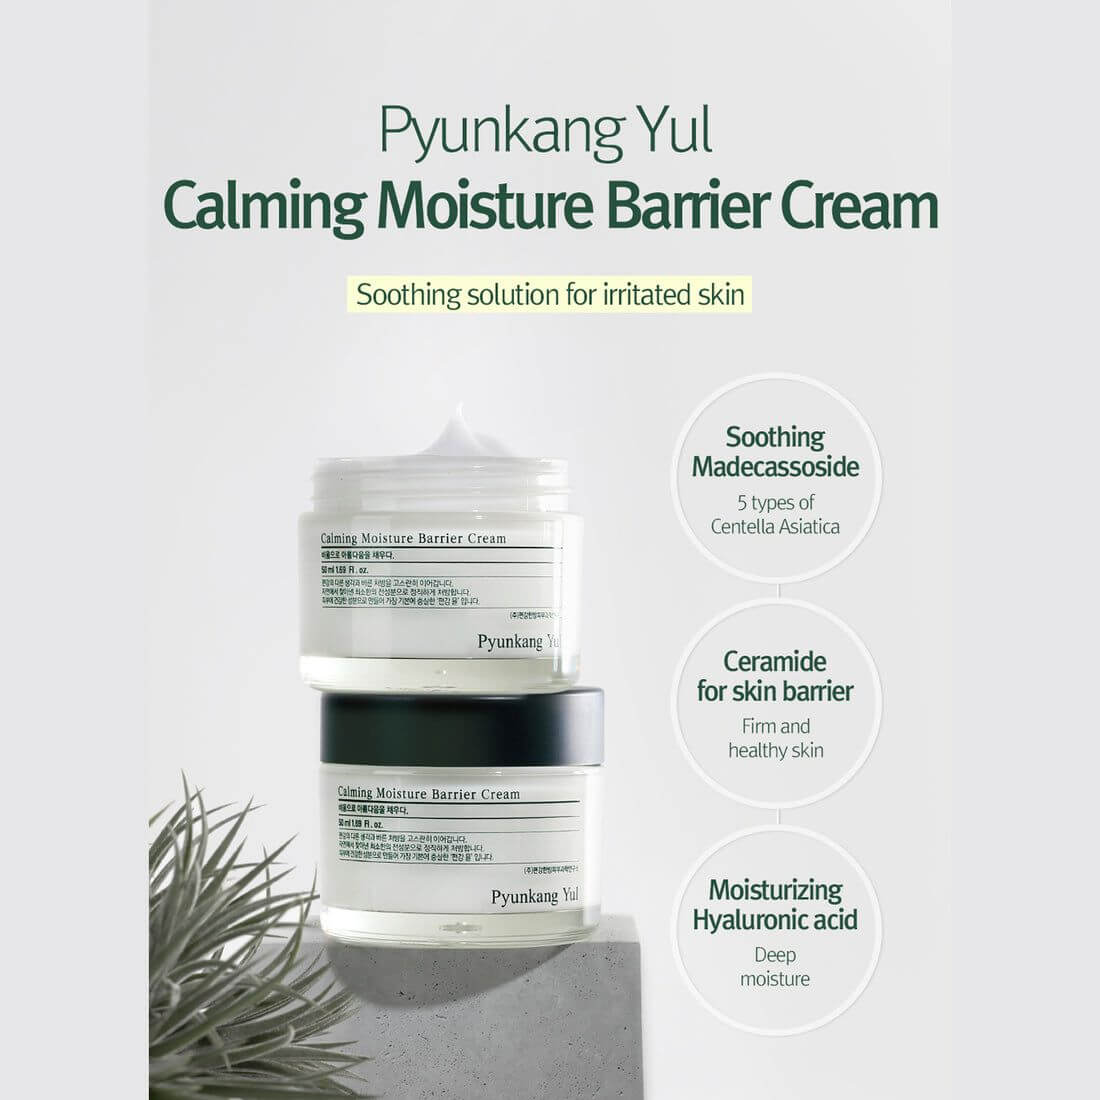 Calming Moisture Barrier Cream